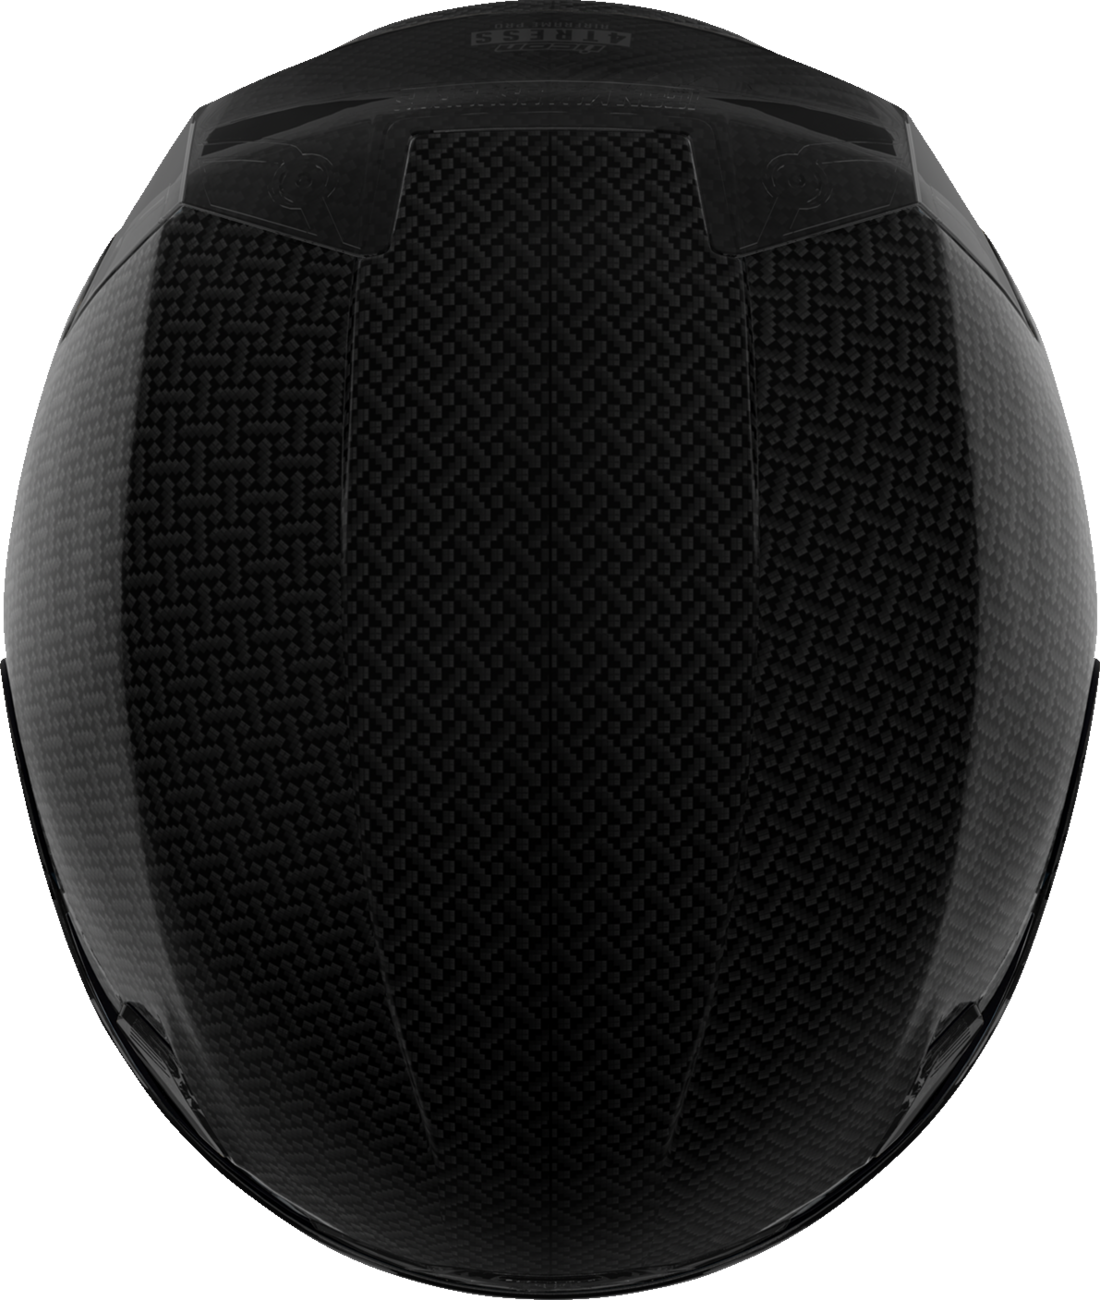 ICON Airframe Pro™ Helmet - Carbon 4Tress - Black - 3XL 0101-16658